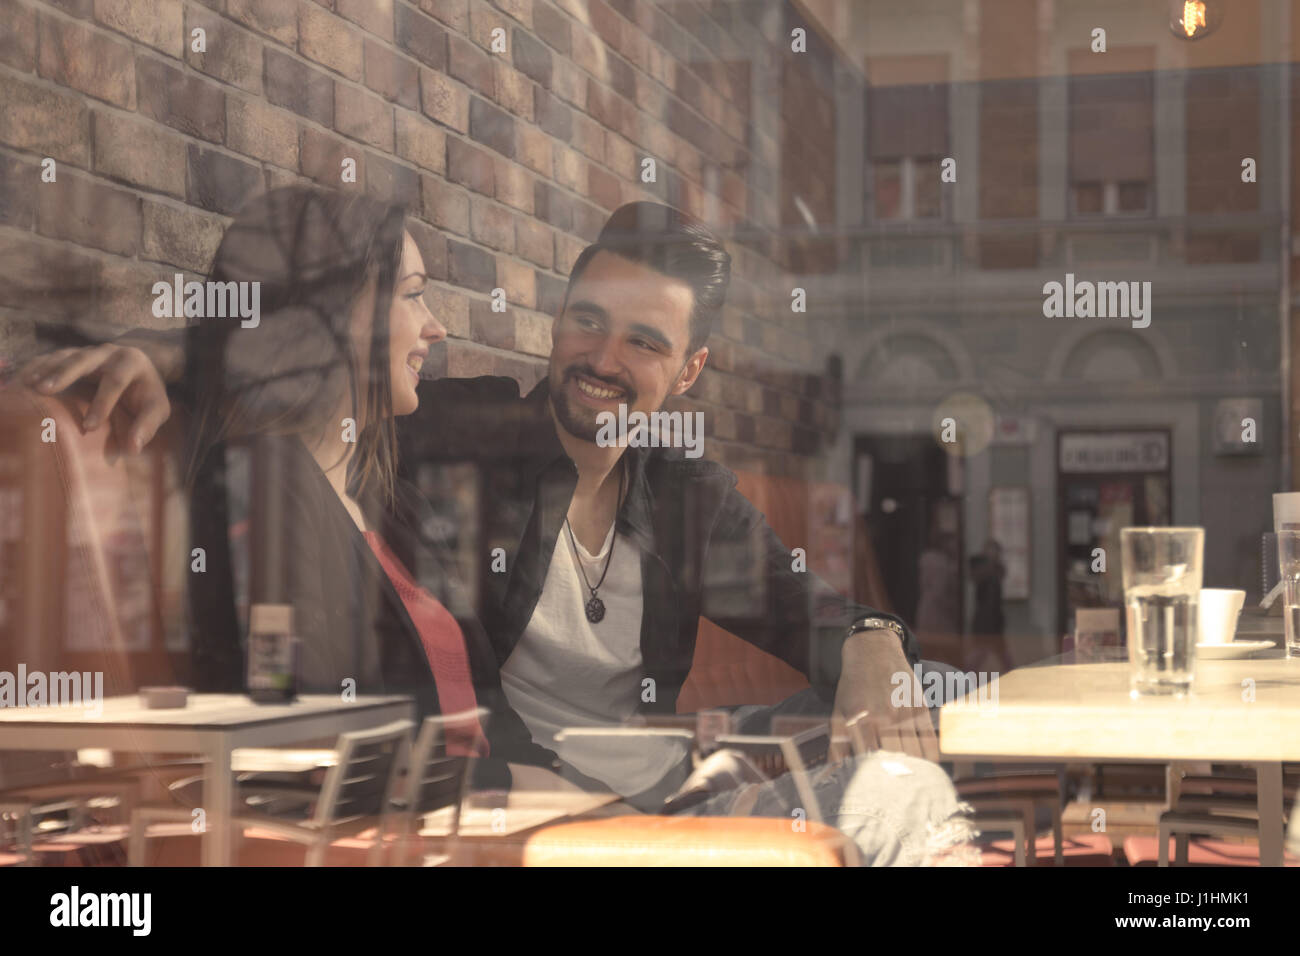 Café junge Erwachsene 20 s paar Frau Mann lächelnd dachte Fenster Reflexion zu schießen Stockfoto